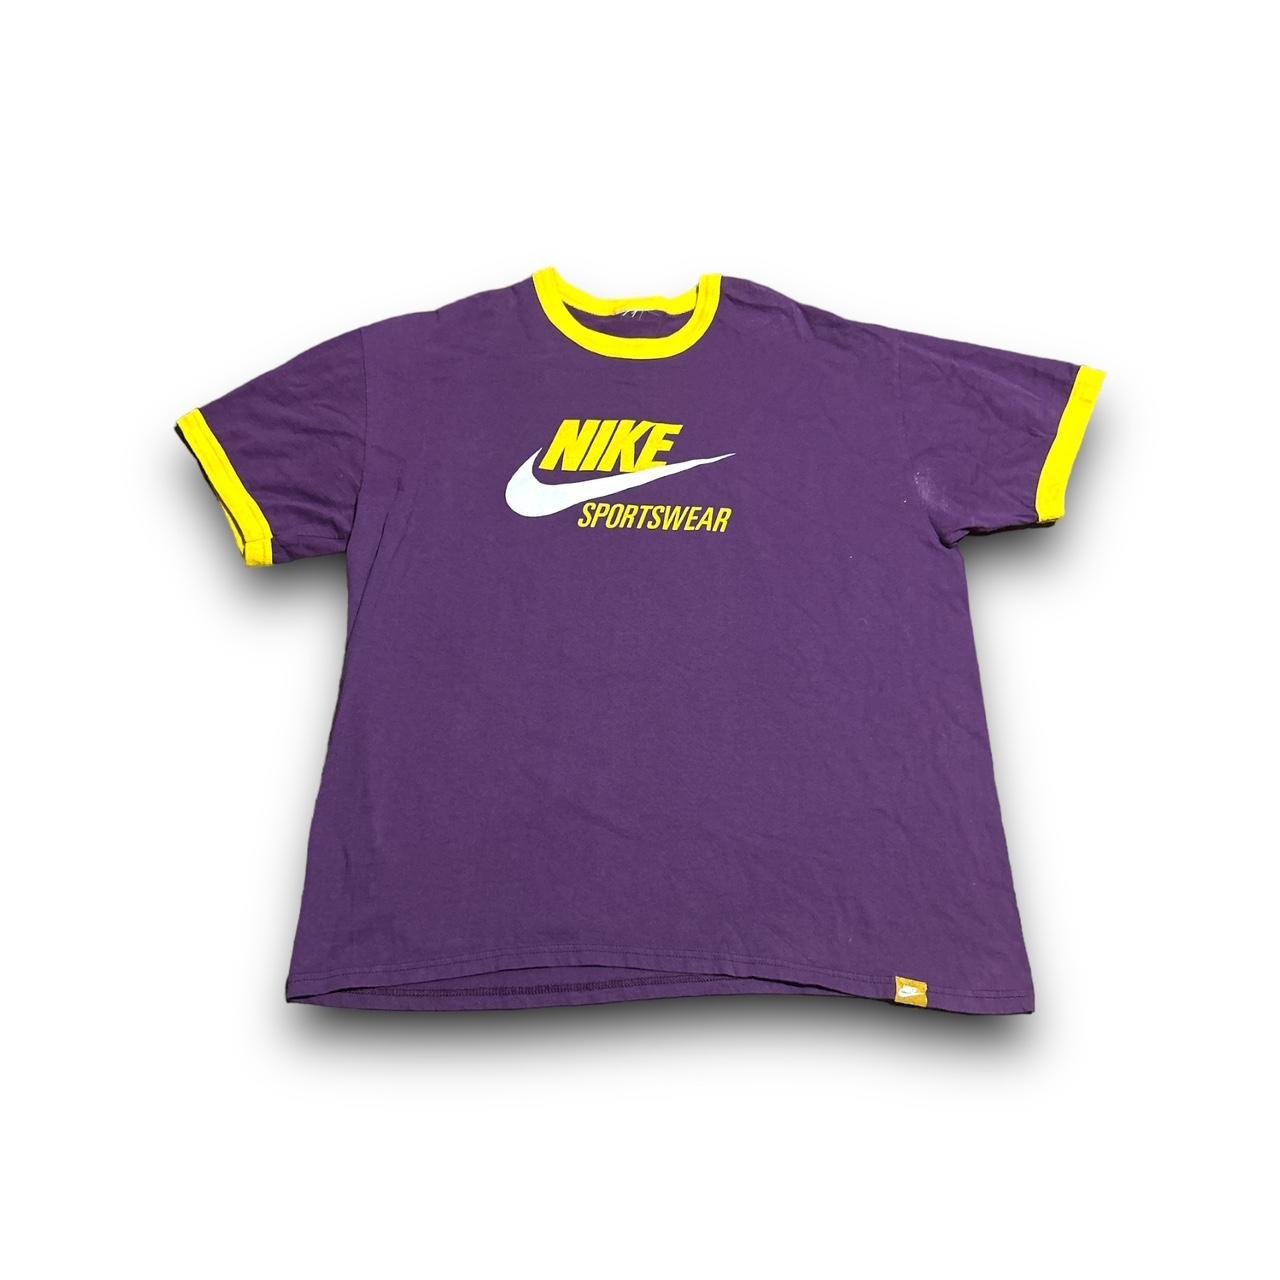 Vintage Nike Sportswear T-Shirt